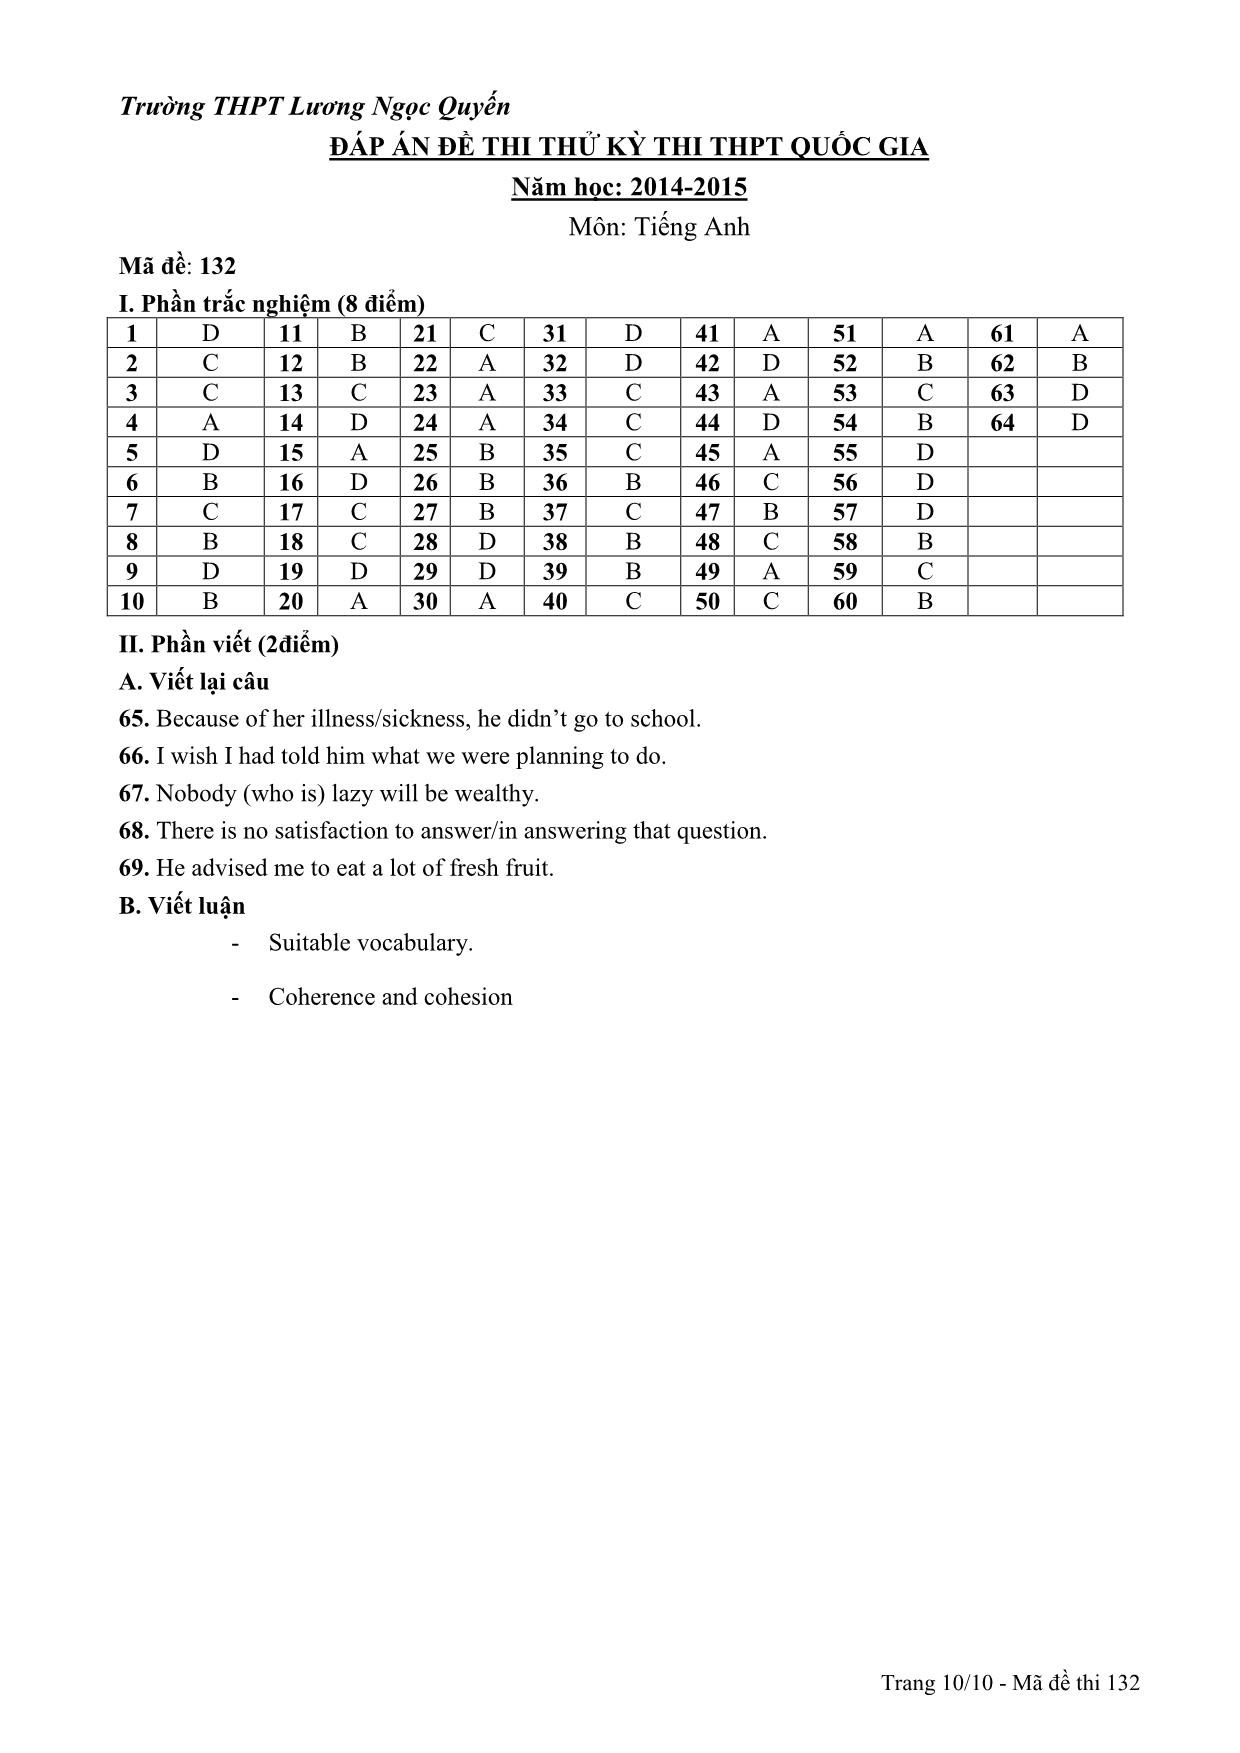 Đề thi thử THPT Quốc gia môn Tiếng Anh - Mã đề 132 - Năm học 2014-2015 - Trường THPT Lương Ngọc Quyến (Có đáp án) trang 10